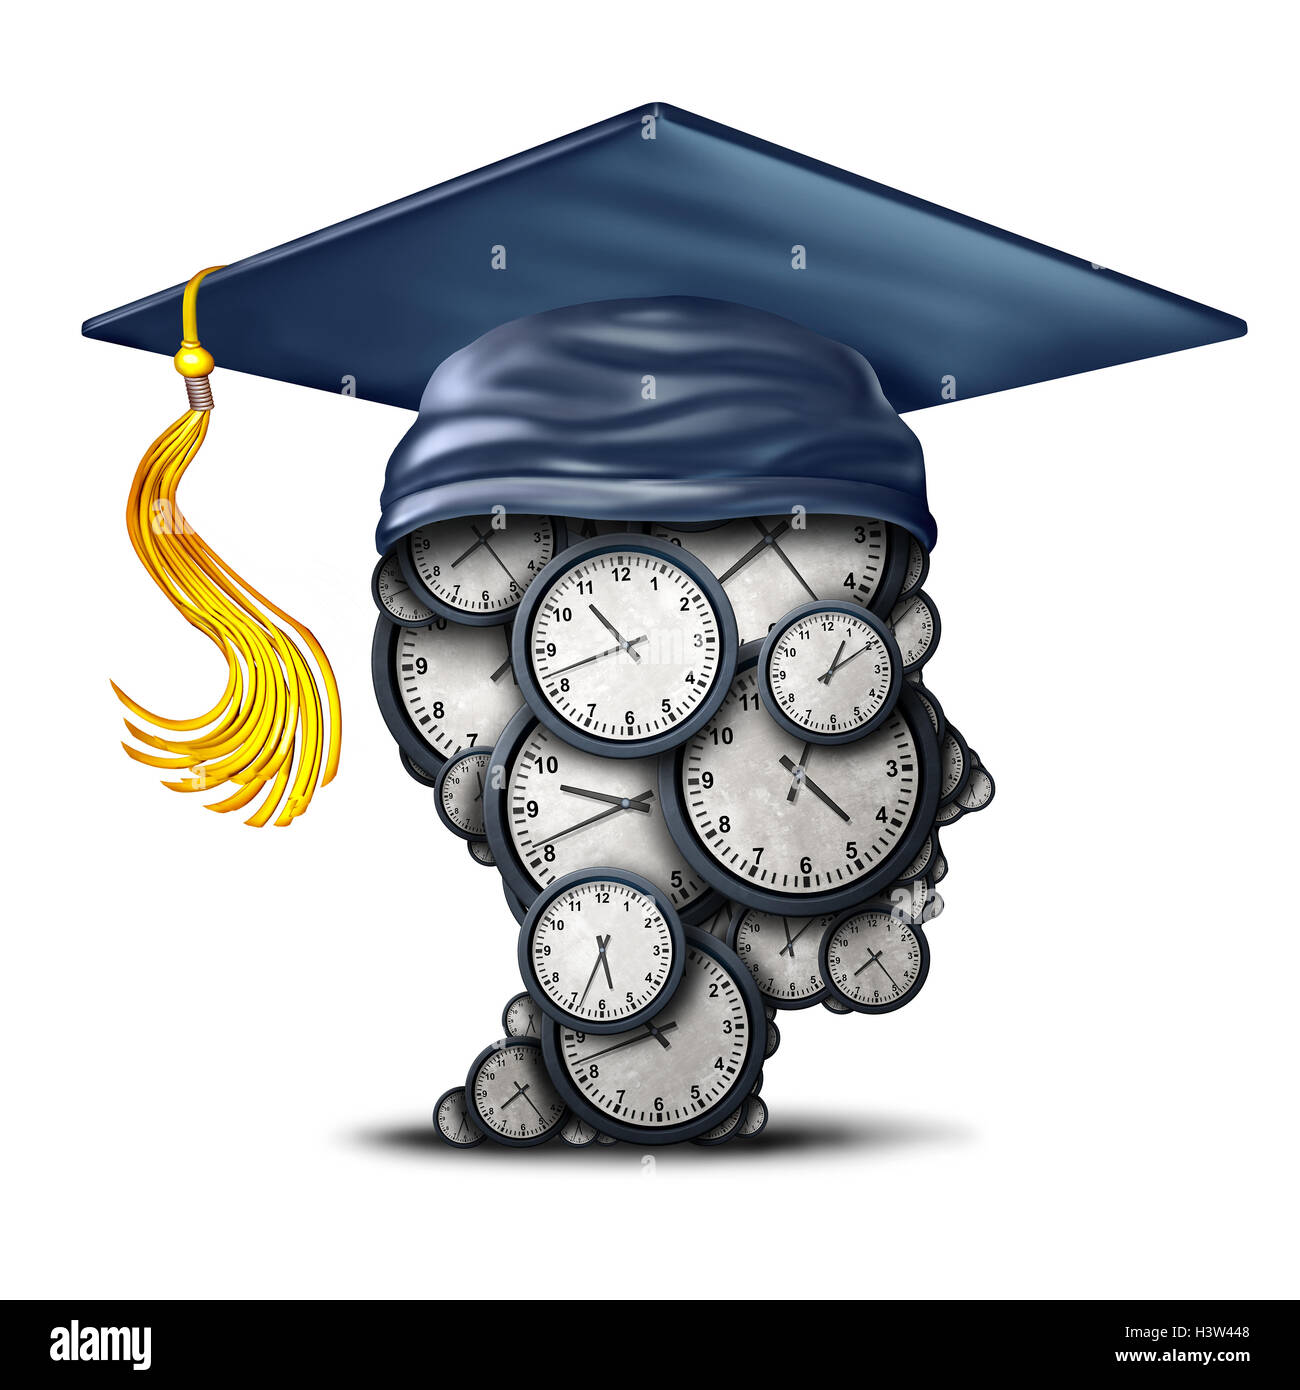 Formation gestion du temps et la date d'obtention du diplôme concept comme un groupe d'horloges en forme de tête humaine avec un mortier ou un diplôme d'administration hat comme un symbole pour l'efficacité de l'apprentissage comme une illustration 3D. Banque D'Images